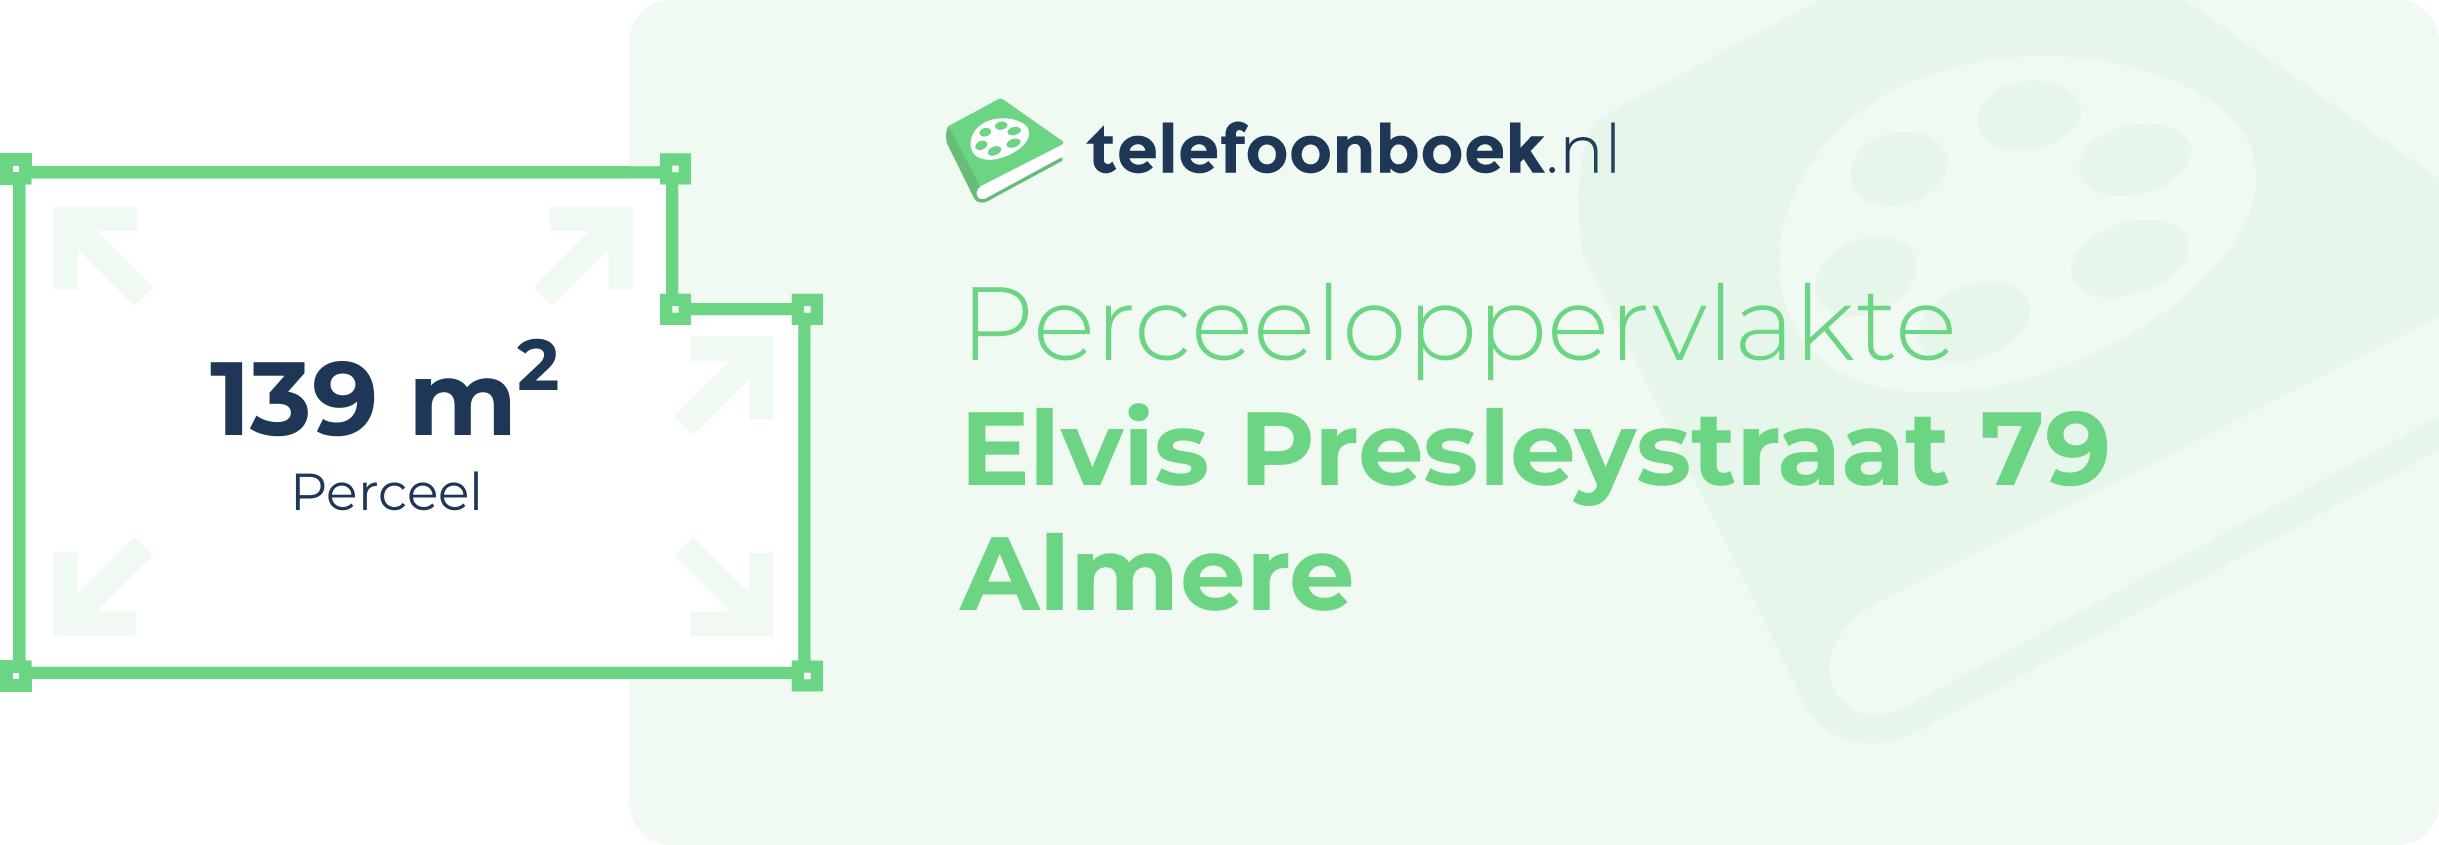 Perceeloppervlakte Elvis Presleystraat 79 Almere